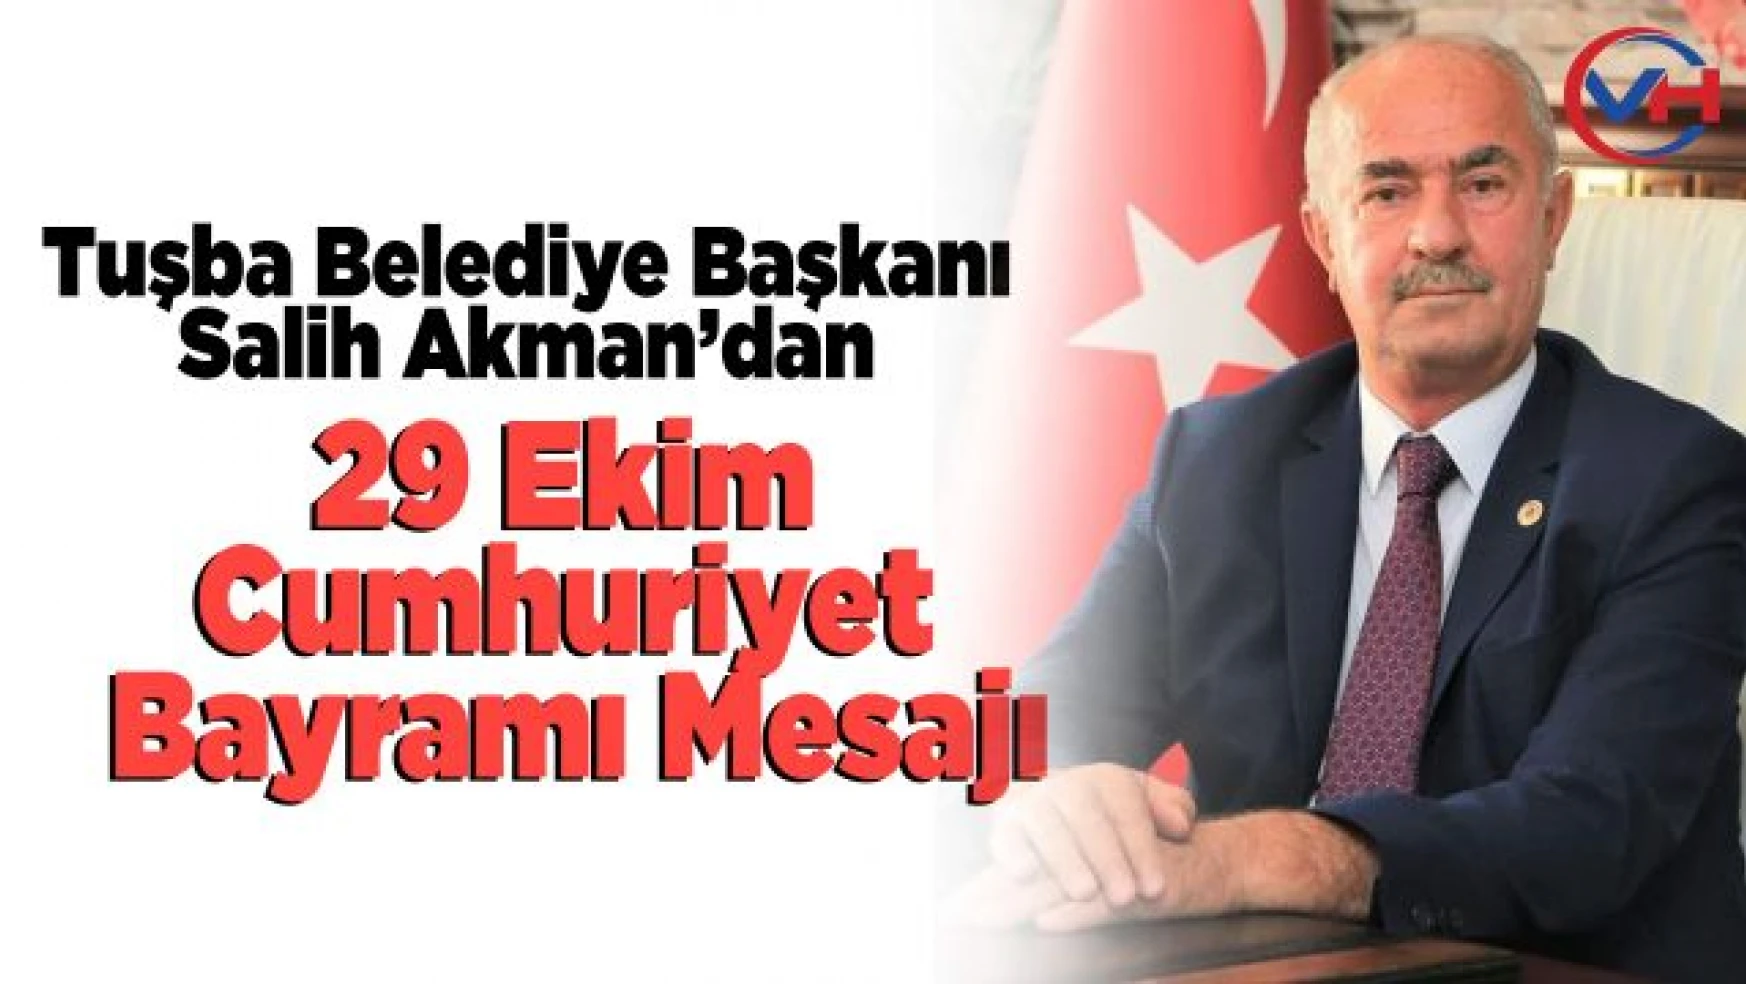 Tuşba Belediye Başkanı Akman'ın, '29 Ekim Cumhuriyet Bayramı' Mesajı